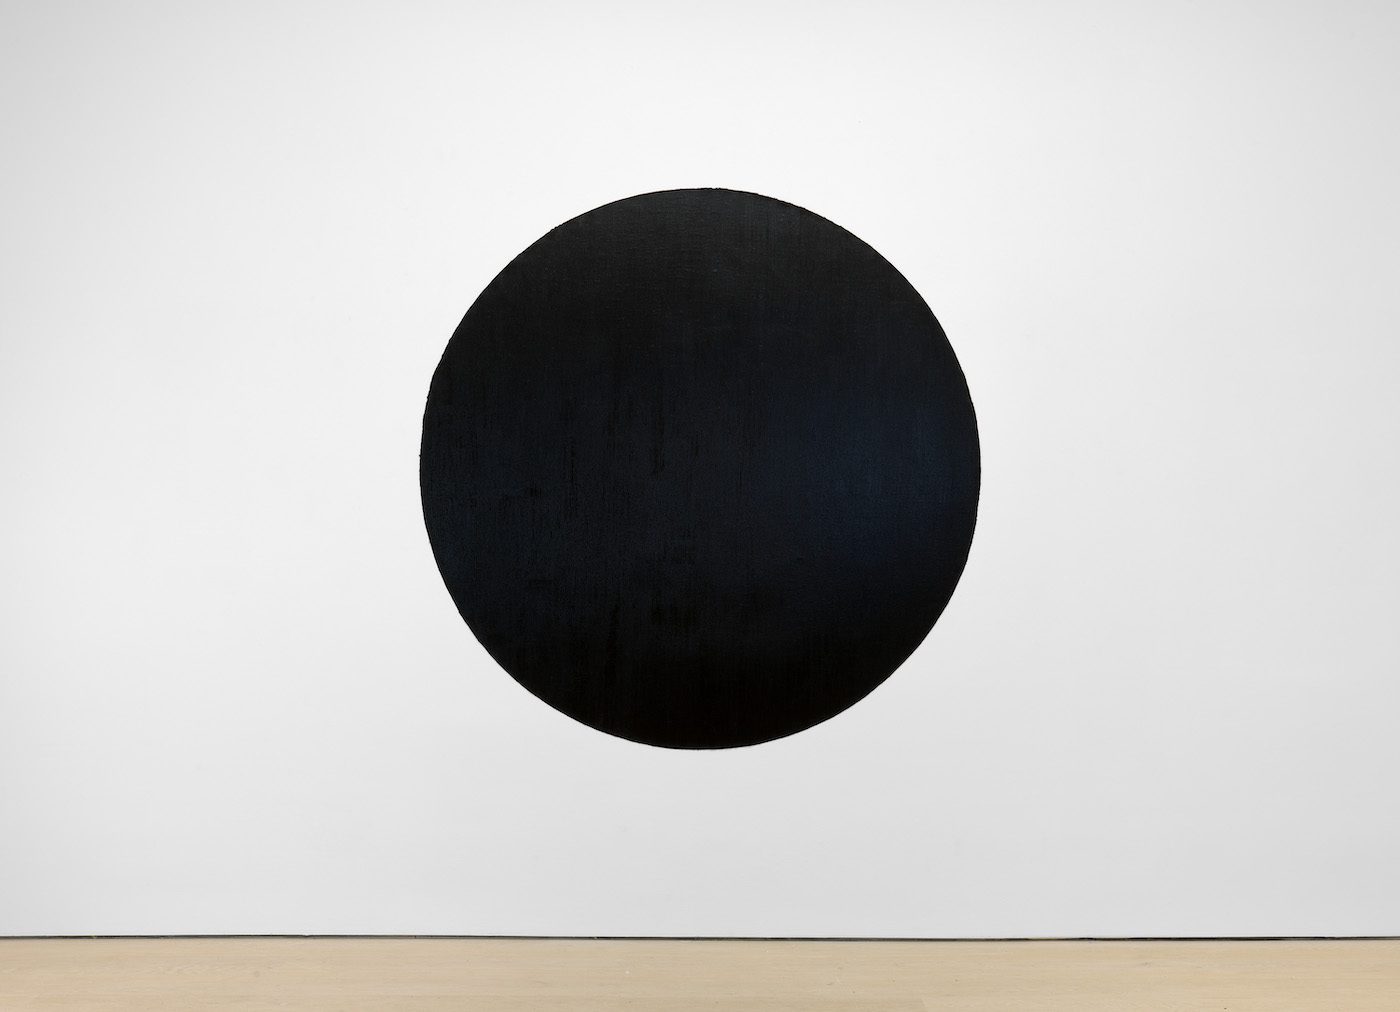 Richard Serra, 'Circle', 1975-2011 | © Richard Serra / Artists Rights Society (ARS), Nueva York. Cortesía del artista